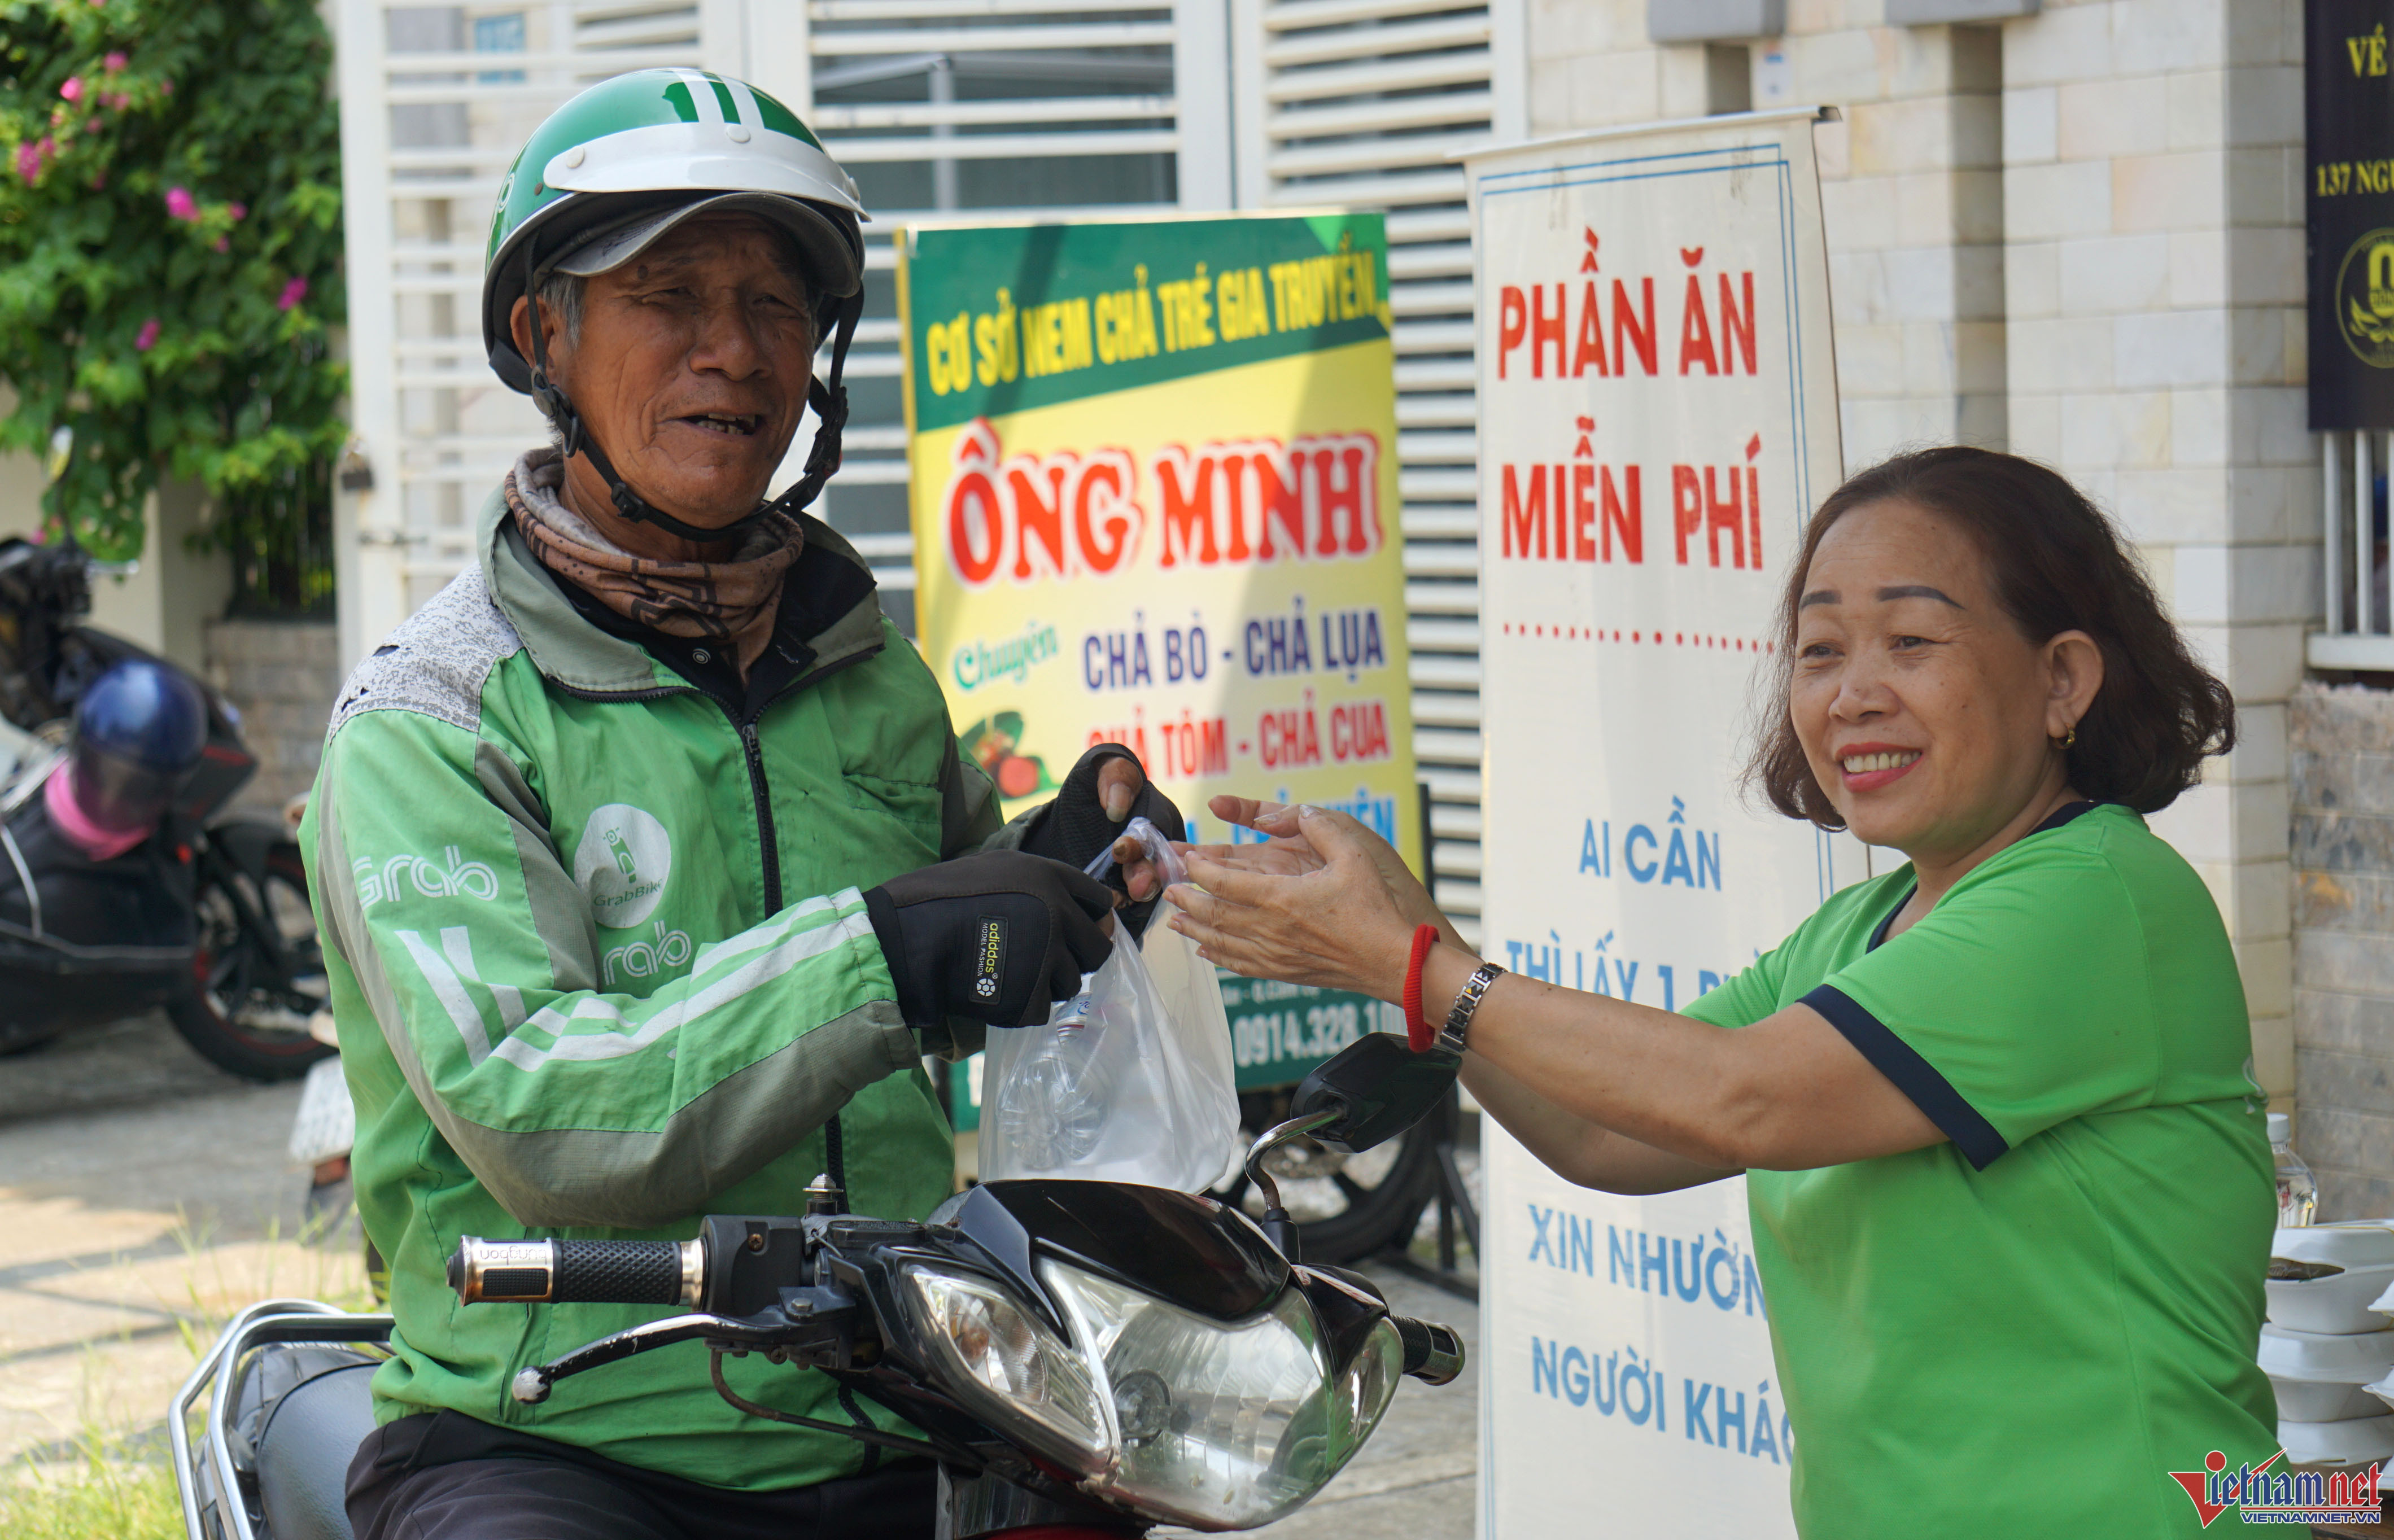 Bếp ăn 0 đồng giúp người khó khăn ở Đà Nẵng